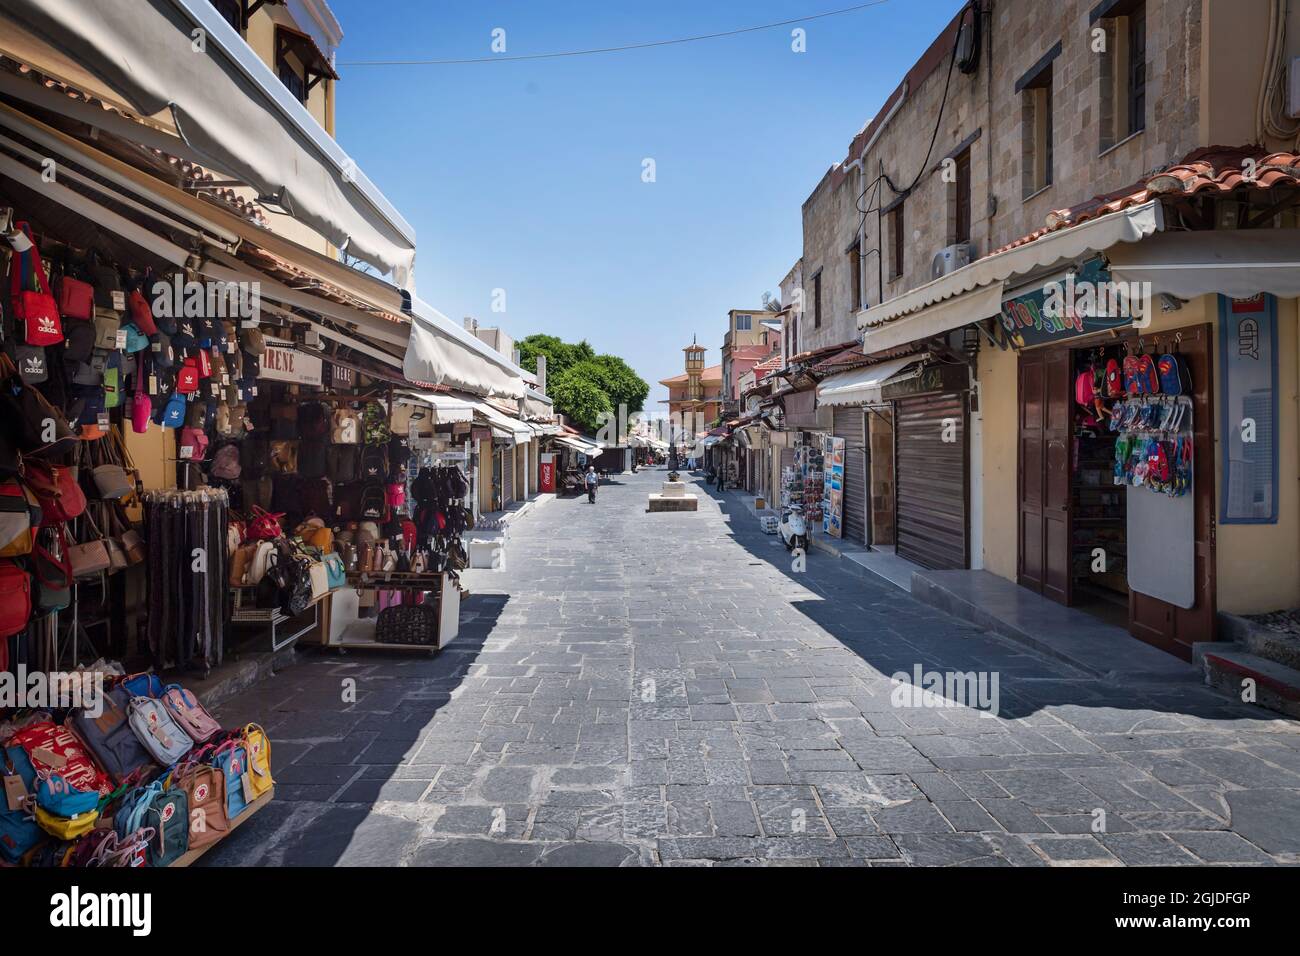 RHODOS 20200703 Socrates Street, ville de Rhodes, île de Rhodes, Grèce, est encore vide de touristes en raison de la pandémie de corona (Covid-19). Foto: Stina Stjernkvist / TT / code 11610 Banque D'Images